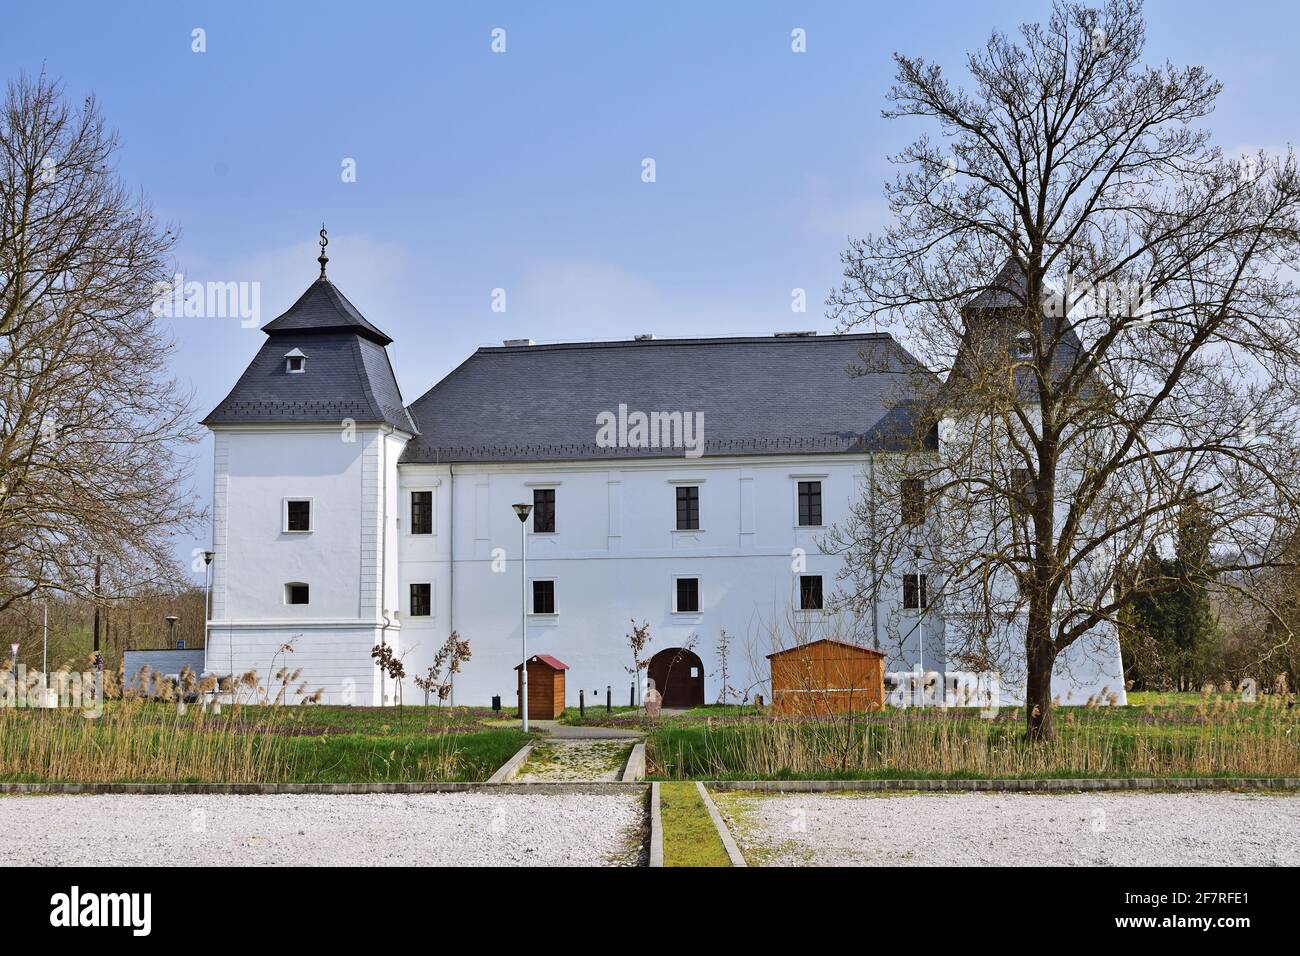 Egervar renaissance palace in Zala county, Hungary Stock Photo